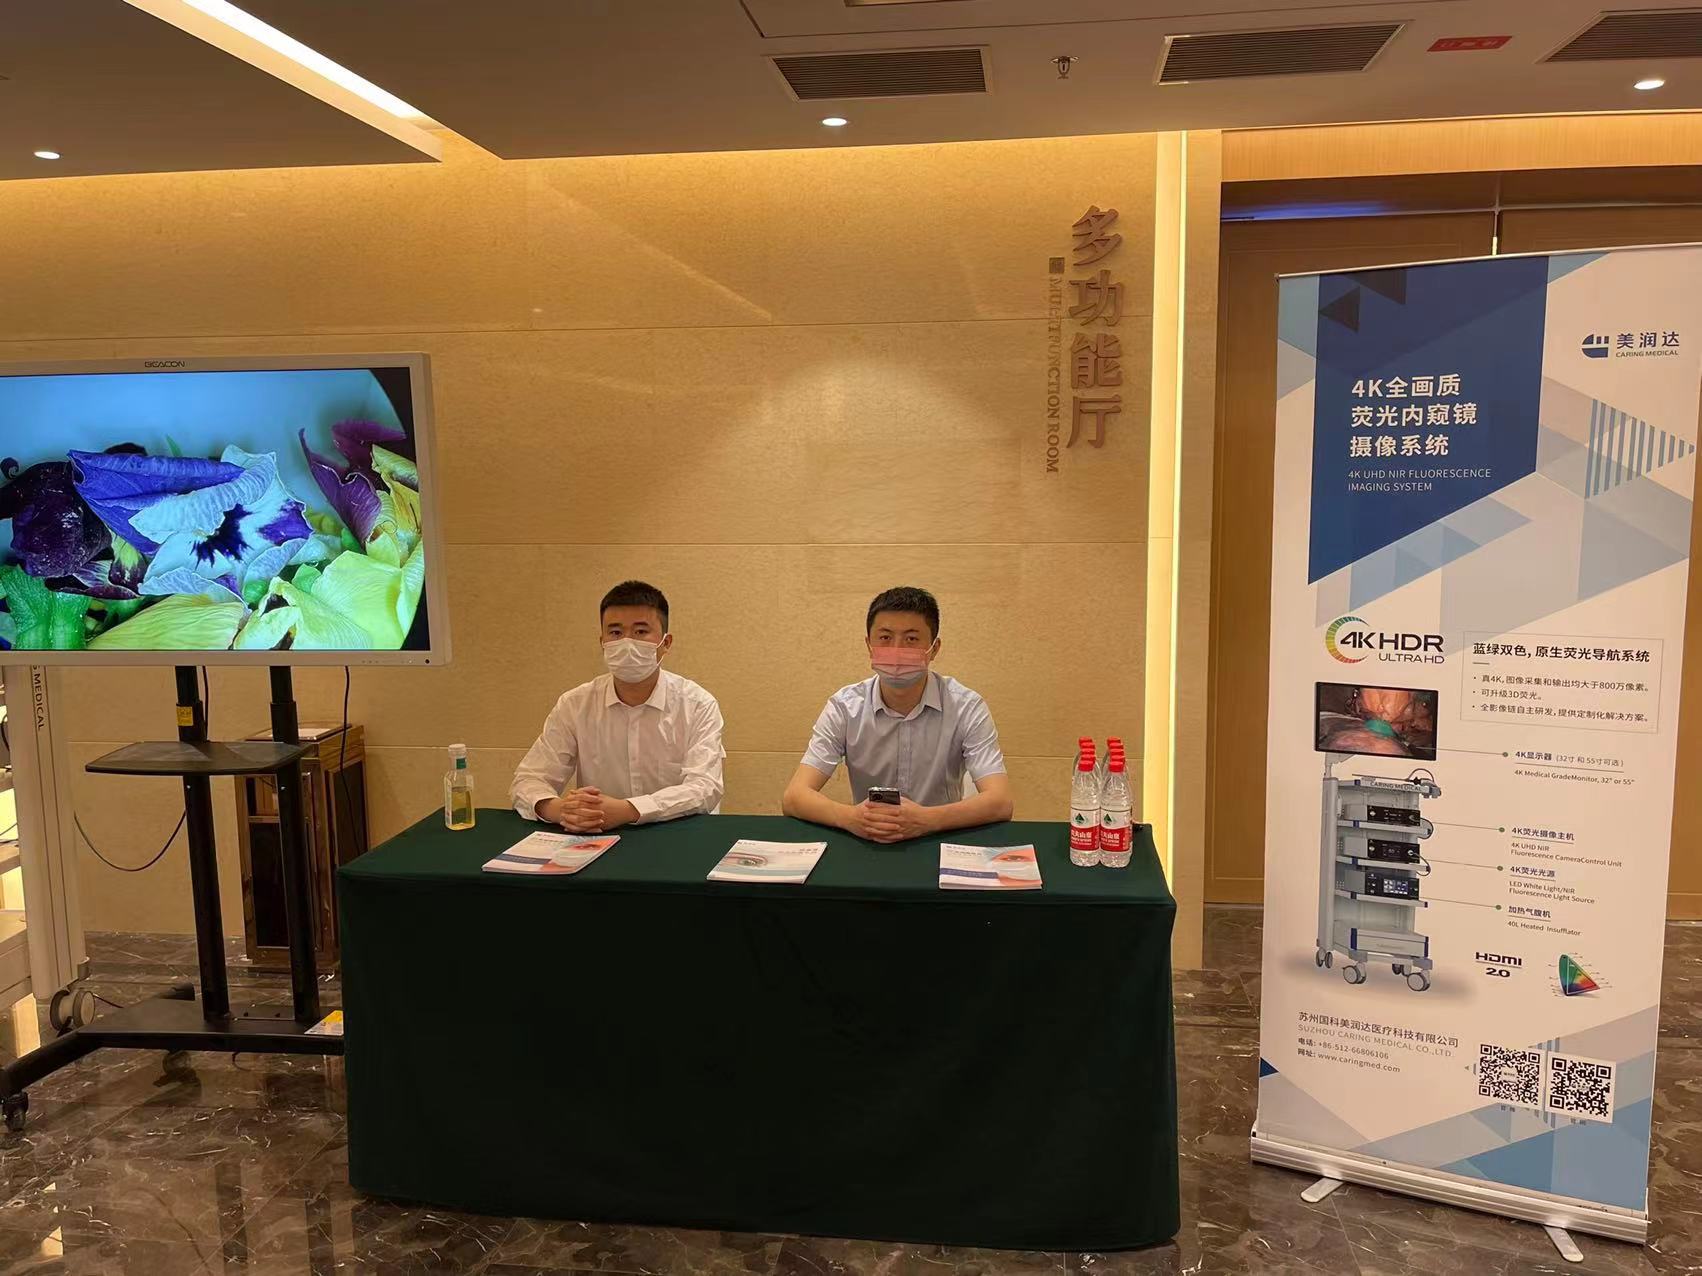 会议回顾| 美润达携4K超高清荧光内窥镜系统出席南京&乌鲁木齐学术会议